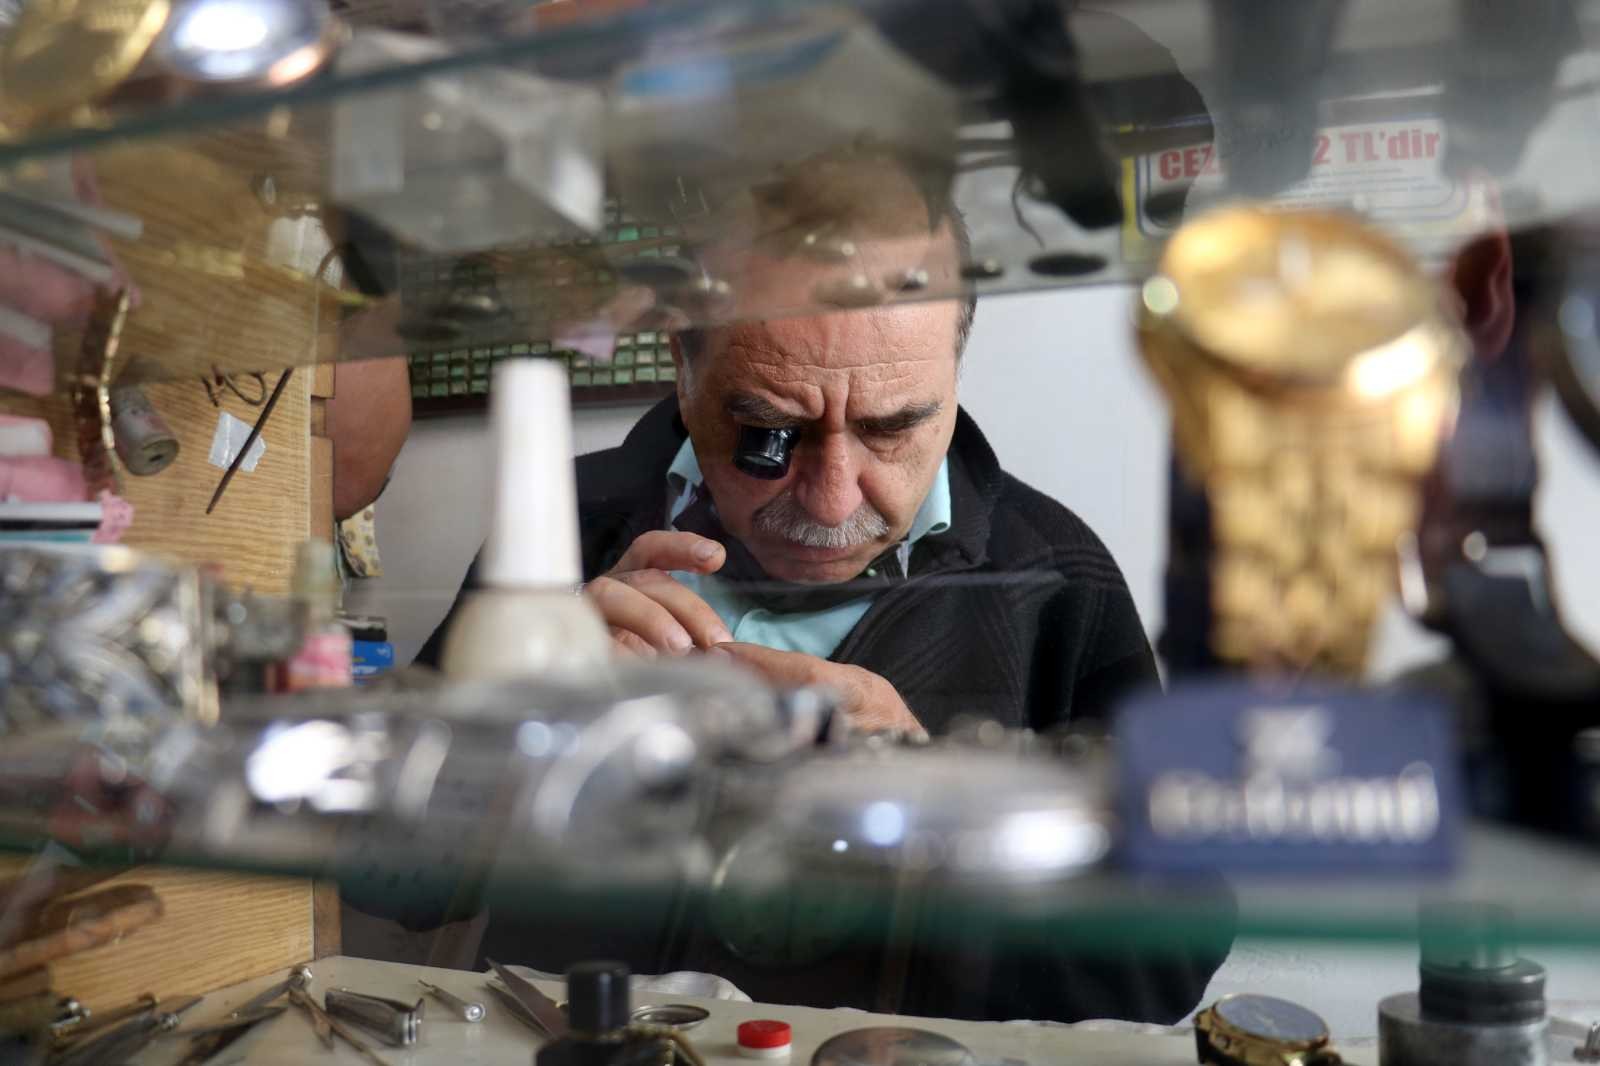 Zamana ayar çeken adam, akıllı teknolojilere yeniliyor #sivas